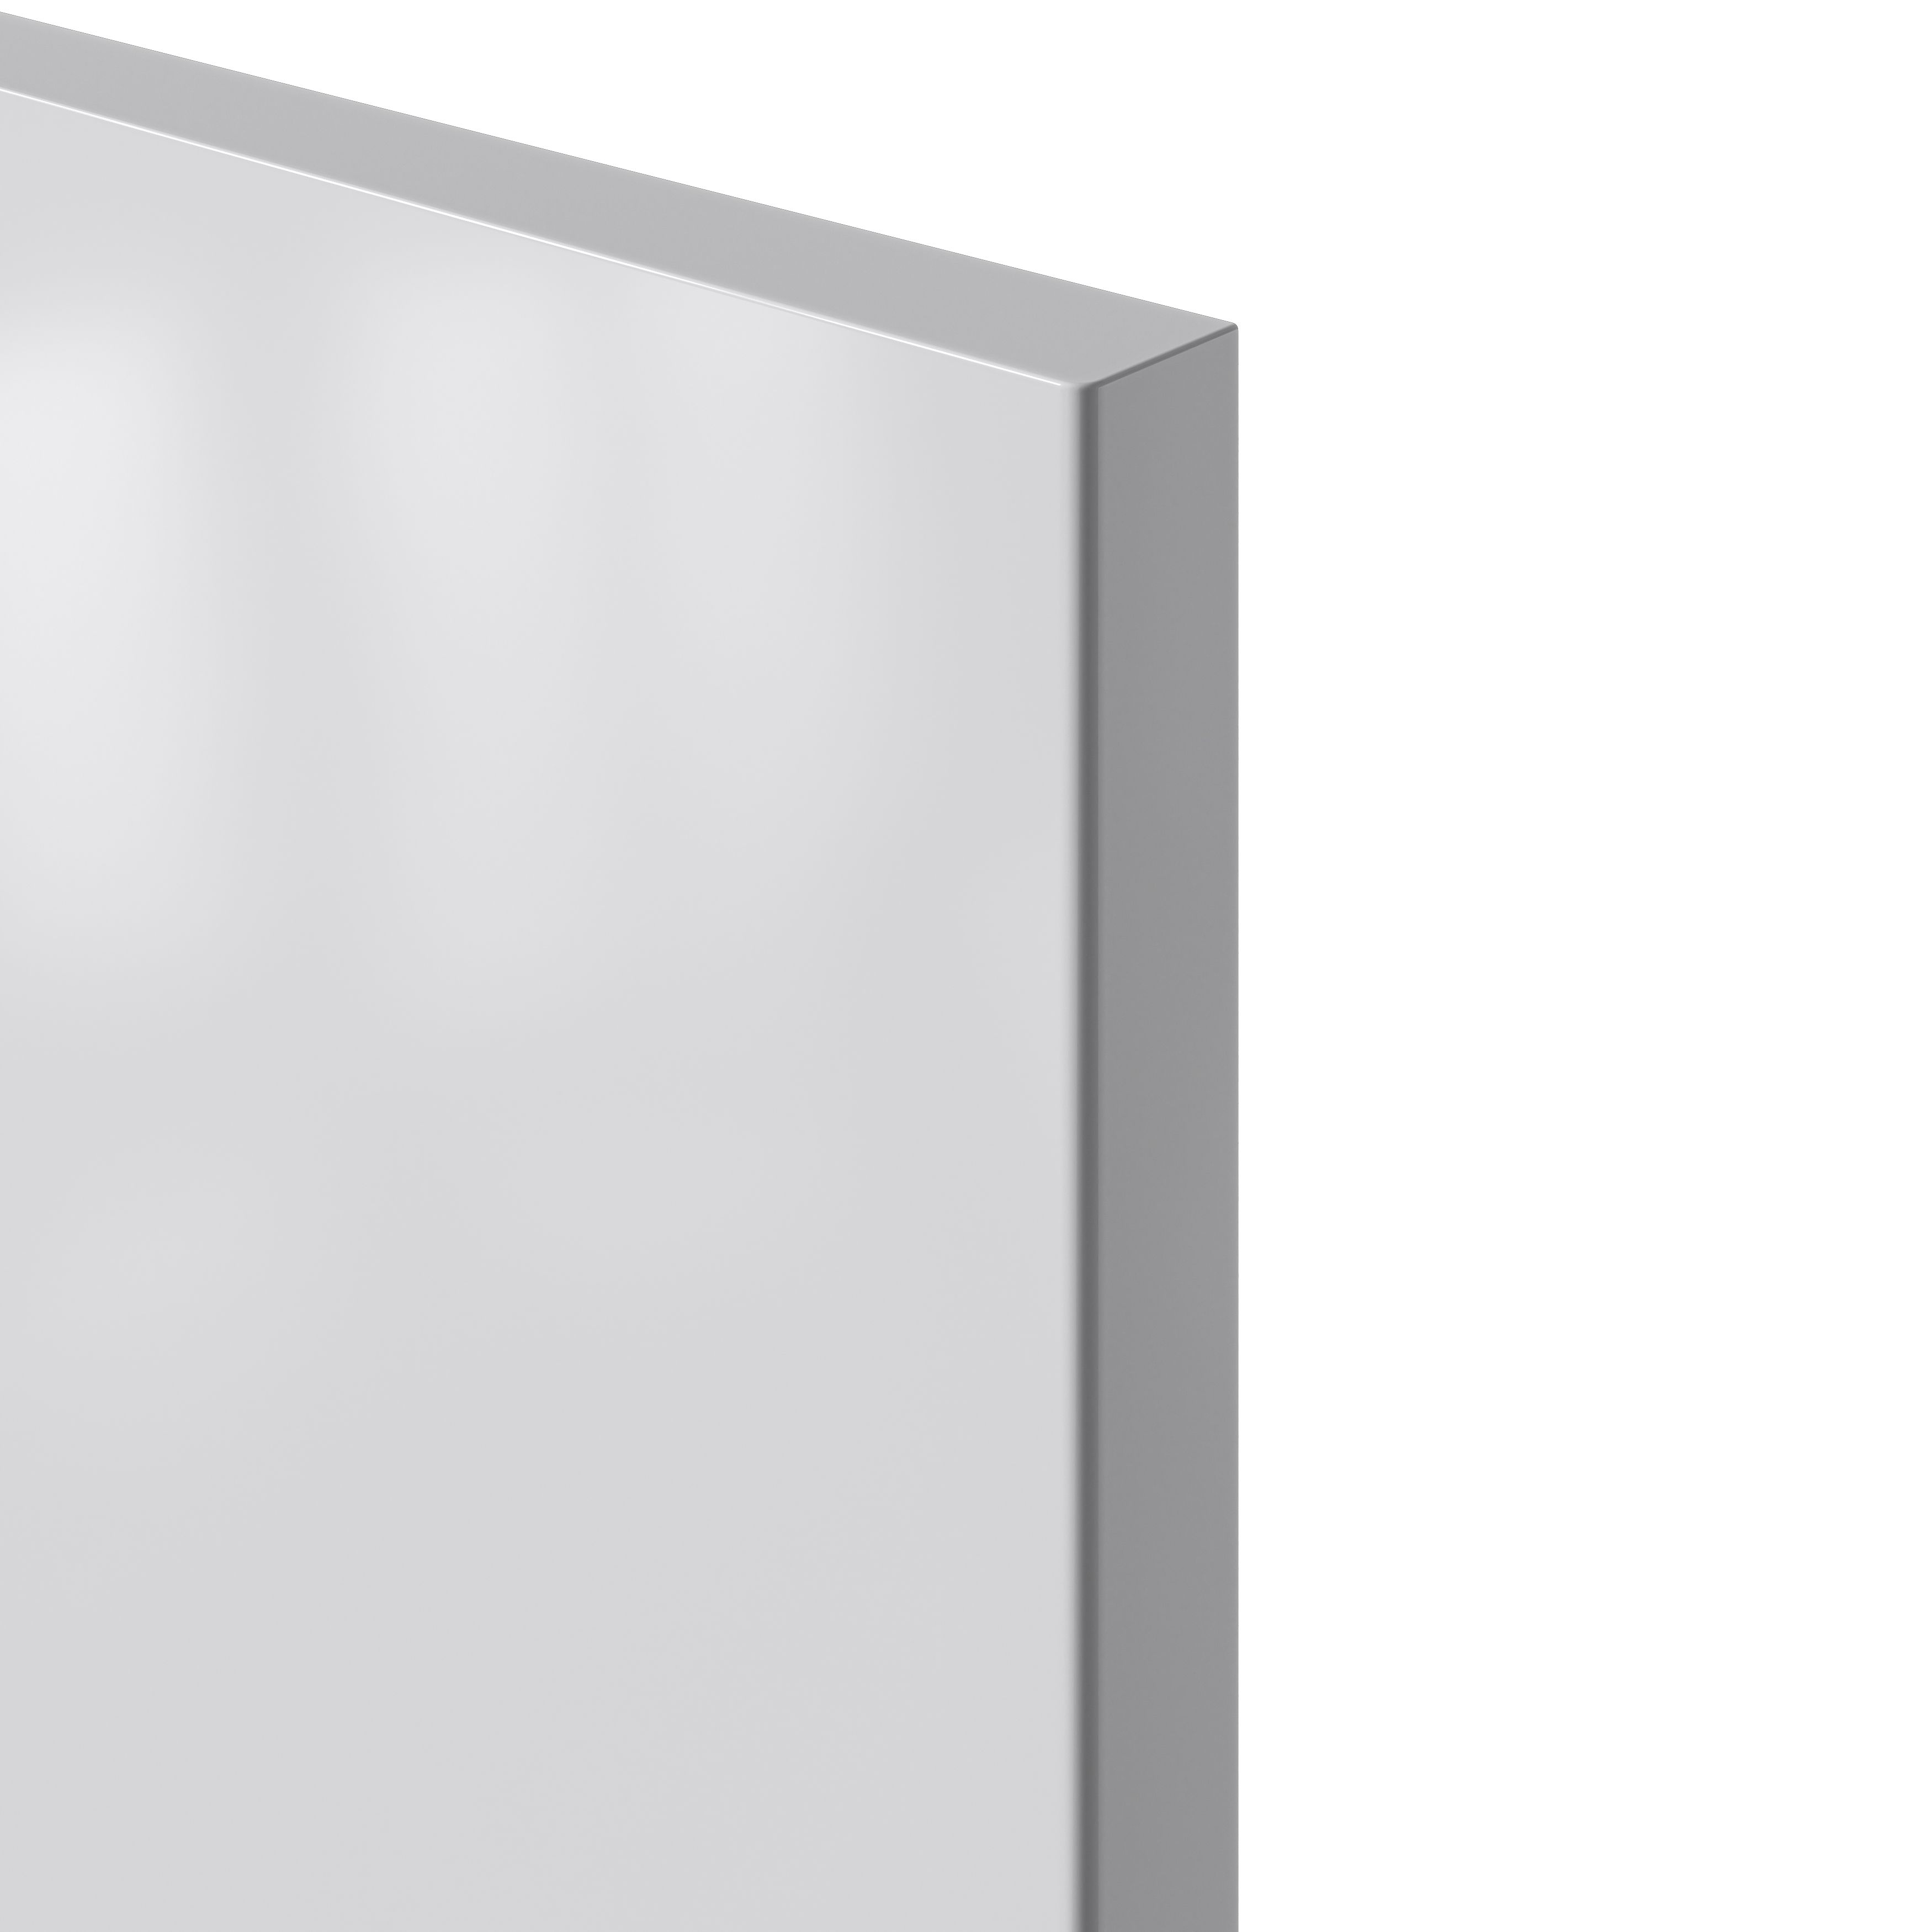 GoodHome Stevia Gloss grey slab Tall larder Cabinet door (W)500mm (H)1467mm (T)18mm